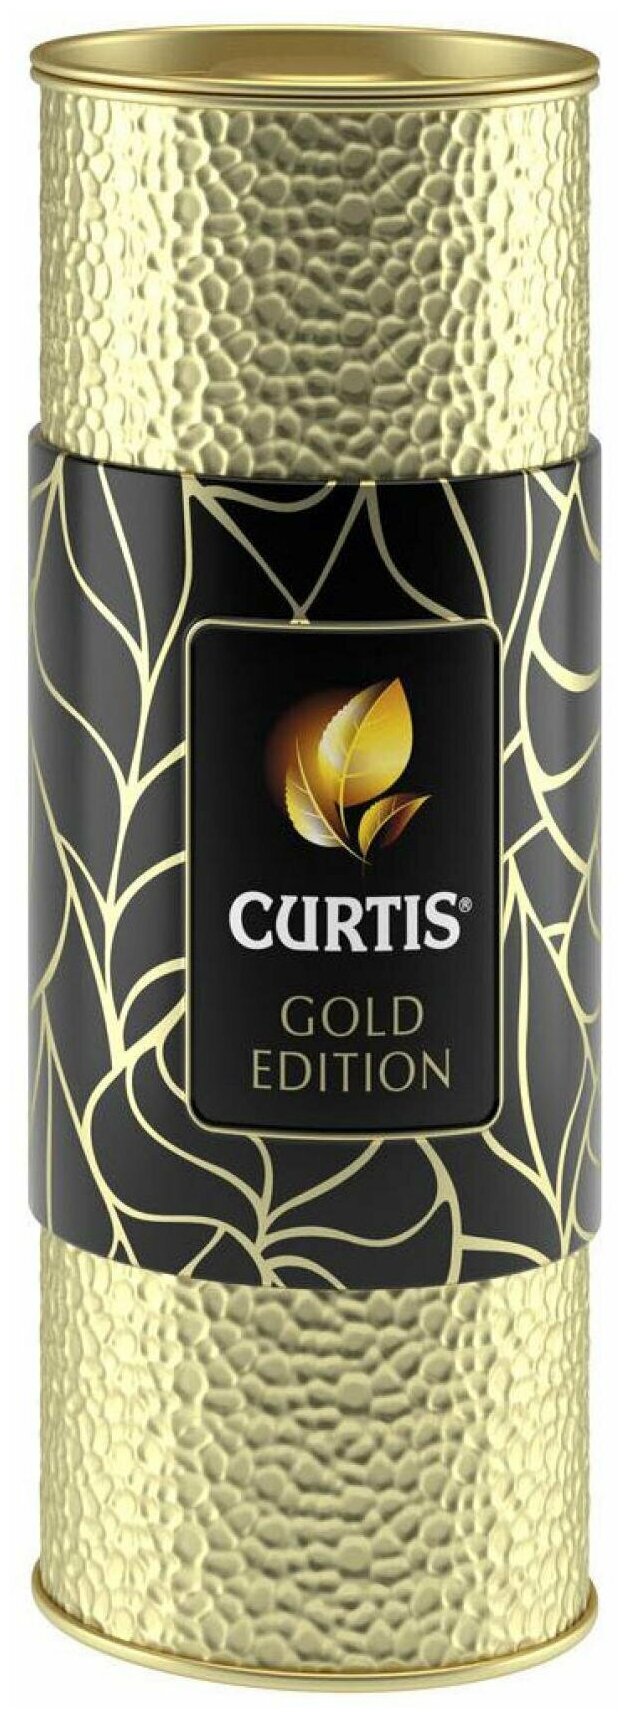 Набор чая Curtis "Gold Edition" 80г, чай ассорти: чай черный и фруктовый ароматизированный, крупнолистовой / подарочная упаковка - фотография № 1